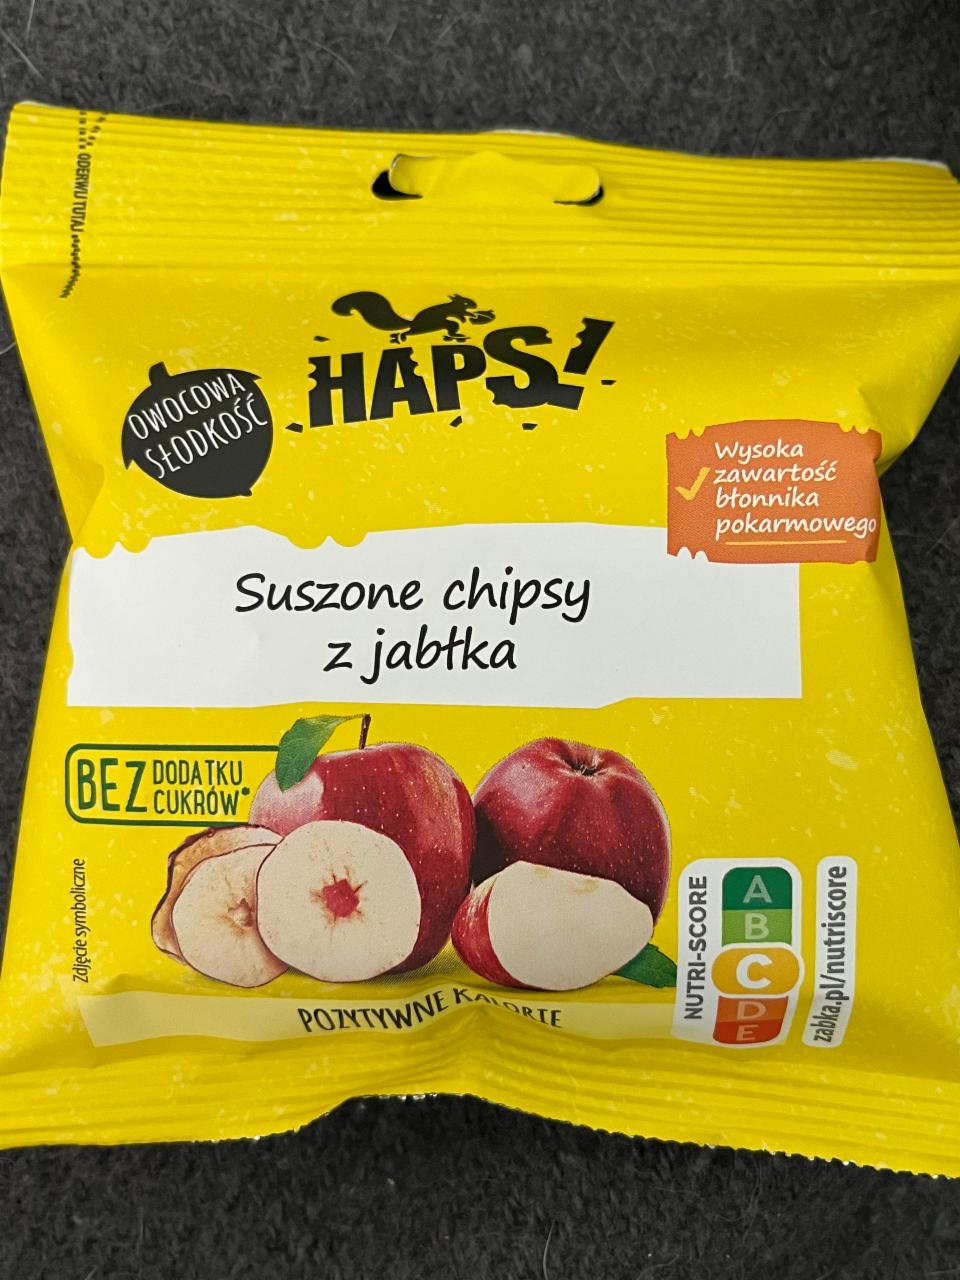 Zdjęcia - Suszone chipsy z jabłka haps 